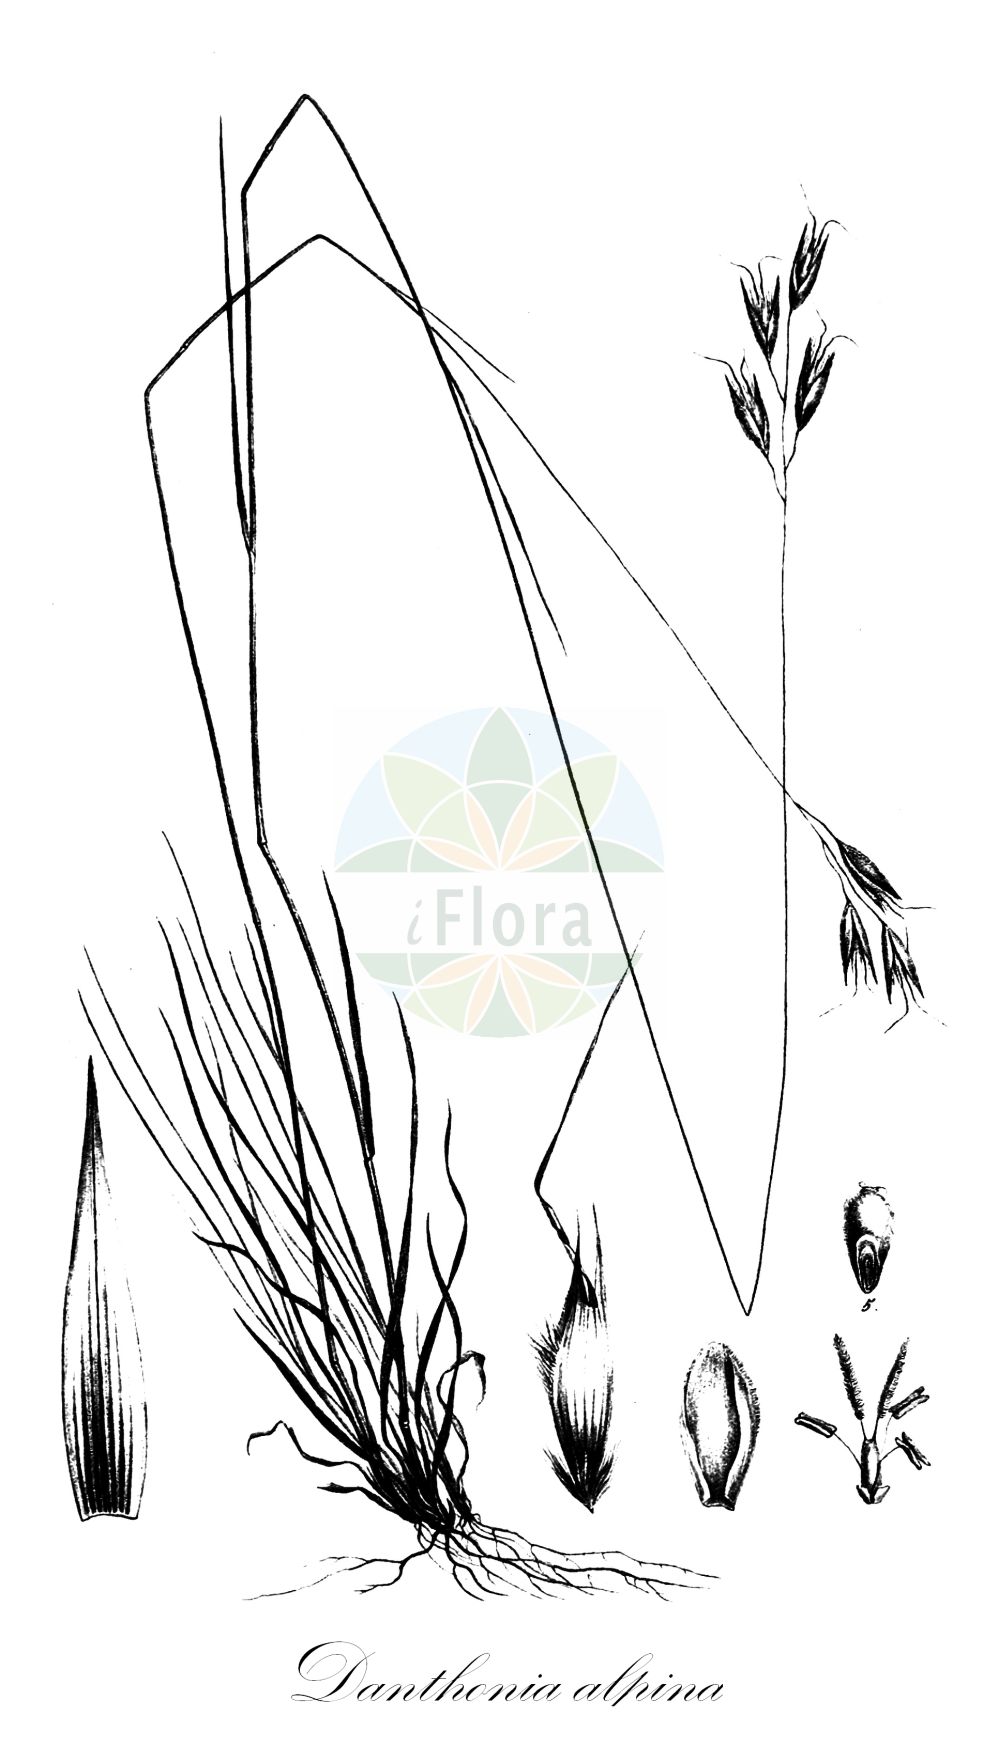 Historische Abbildung von Danthonia alpina (Kelch-Traubenhafer - Alpine Oatgrass). Das Bild zeigt Blatt, Bluete, Frucht und Same. ---- Historical Drawing of Danthonia alpina (Kelch-Traubenhafer - Alpine Oatgrass). The image is showing leaf, flower, fruit and seed.(Danthonia alpina,Kelch-Traubenhafer,Alpine Oatgrass,Danthonia calycina,Danthonia provincialis,Danthonia alpina,Kelch-Traubenhafer,Kelchgras,Alpine Oatgrass,Danthonia,Dreizahn,Oatgrass,Poaceae,Süßgräser,Grass family,Blatt,Bluete,Frucht,Same,leaf,flower,fruit,seed,Trinius (1828-1836))